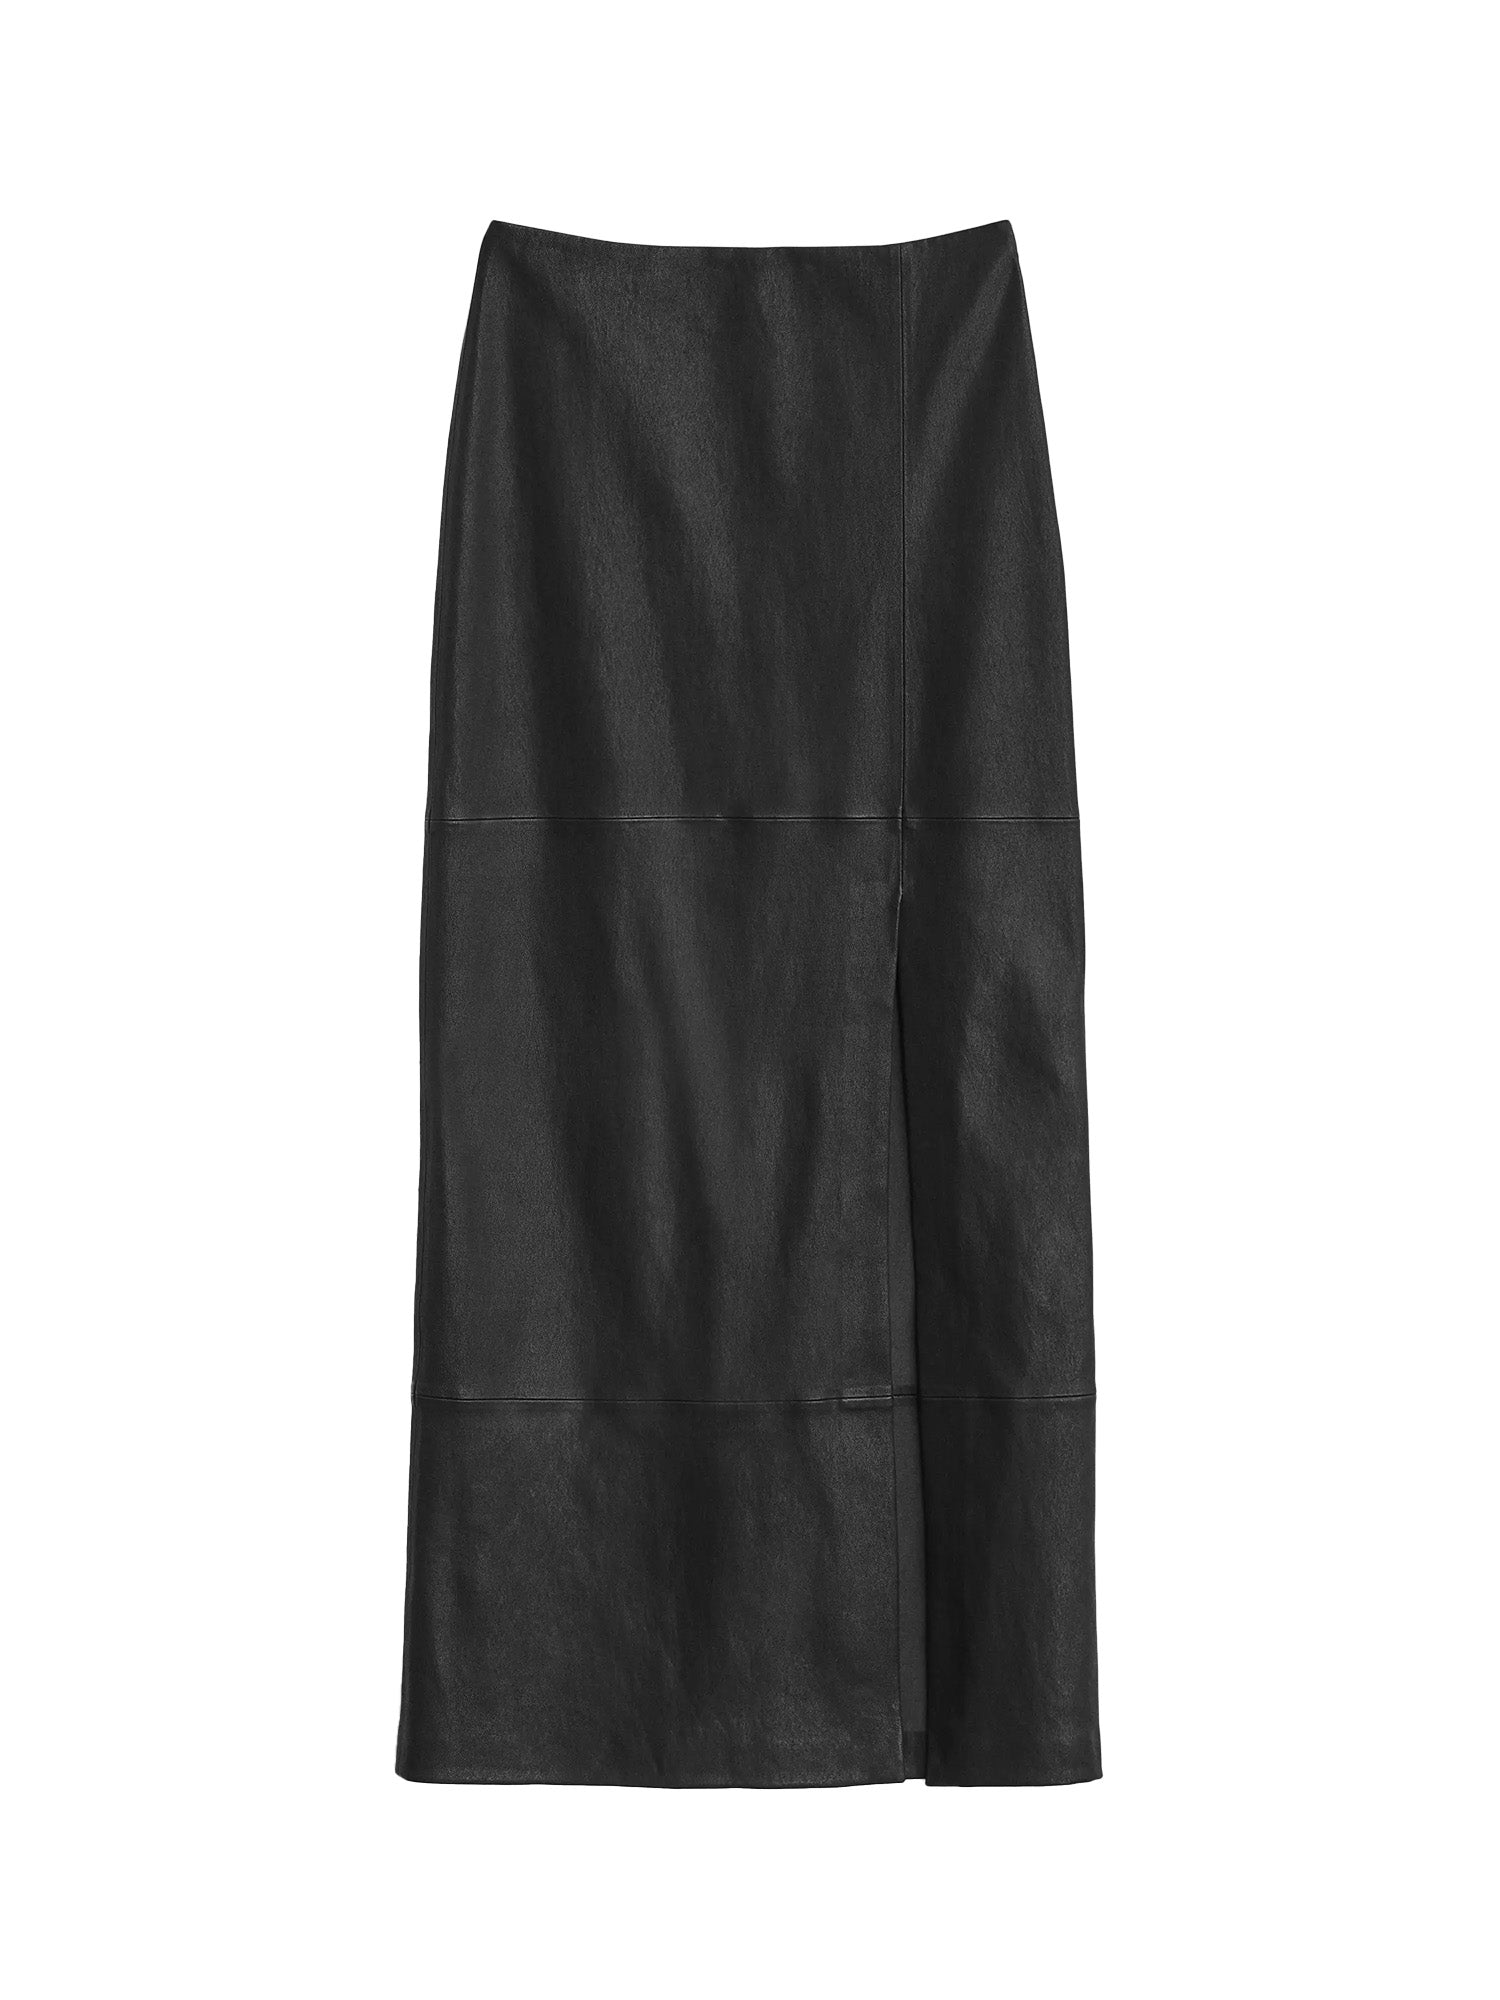 Rag & Bone Ilana Stretch Leather Skirt